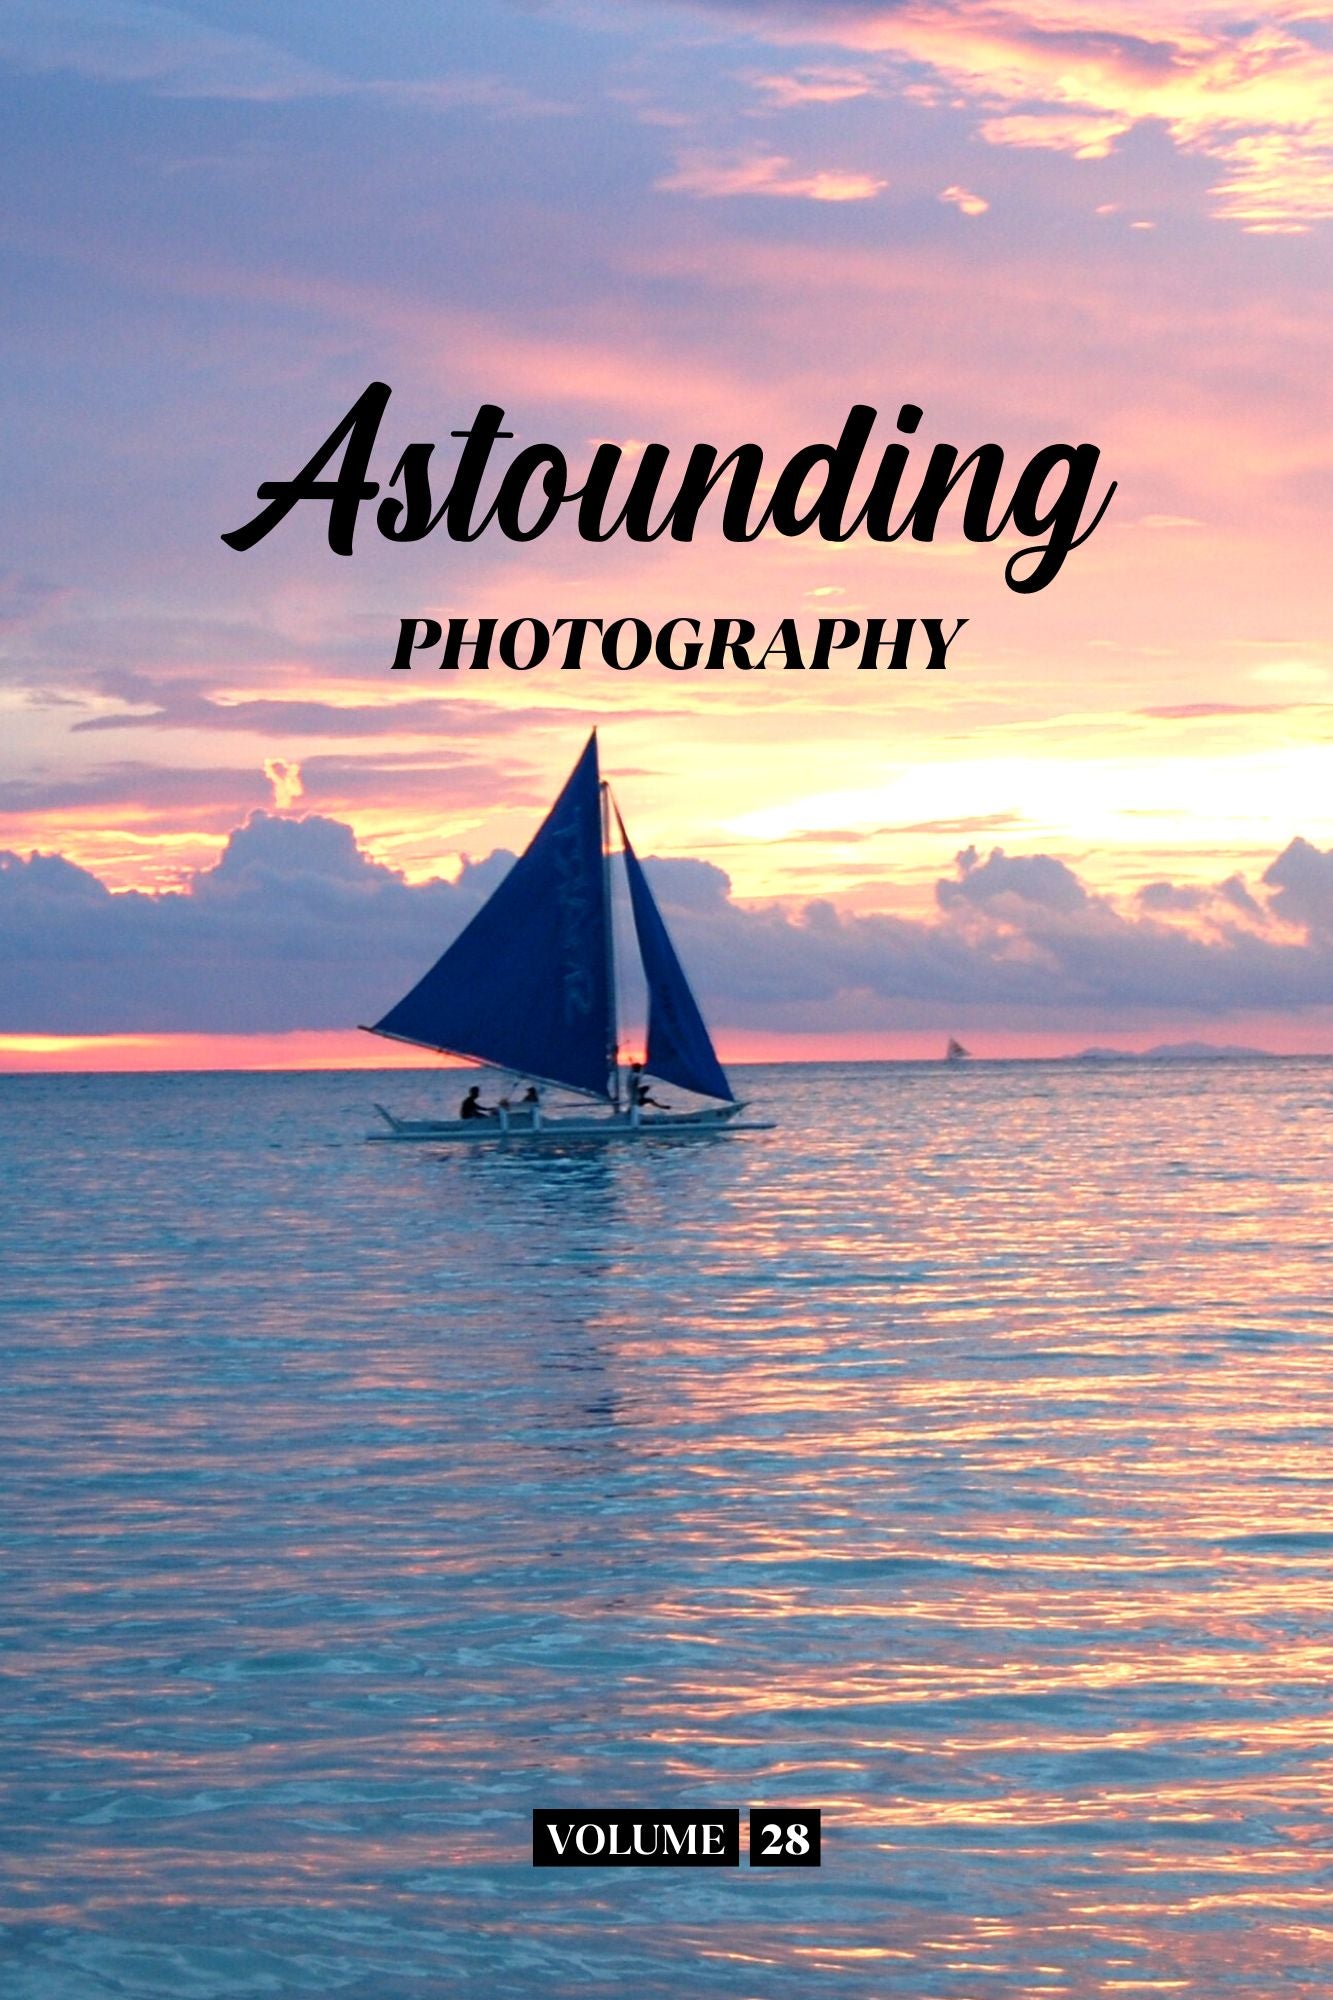 Astounding Photography Volume 28 (Physical Book Pre-Order)